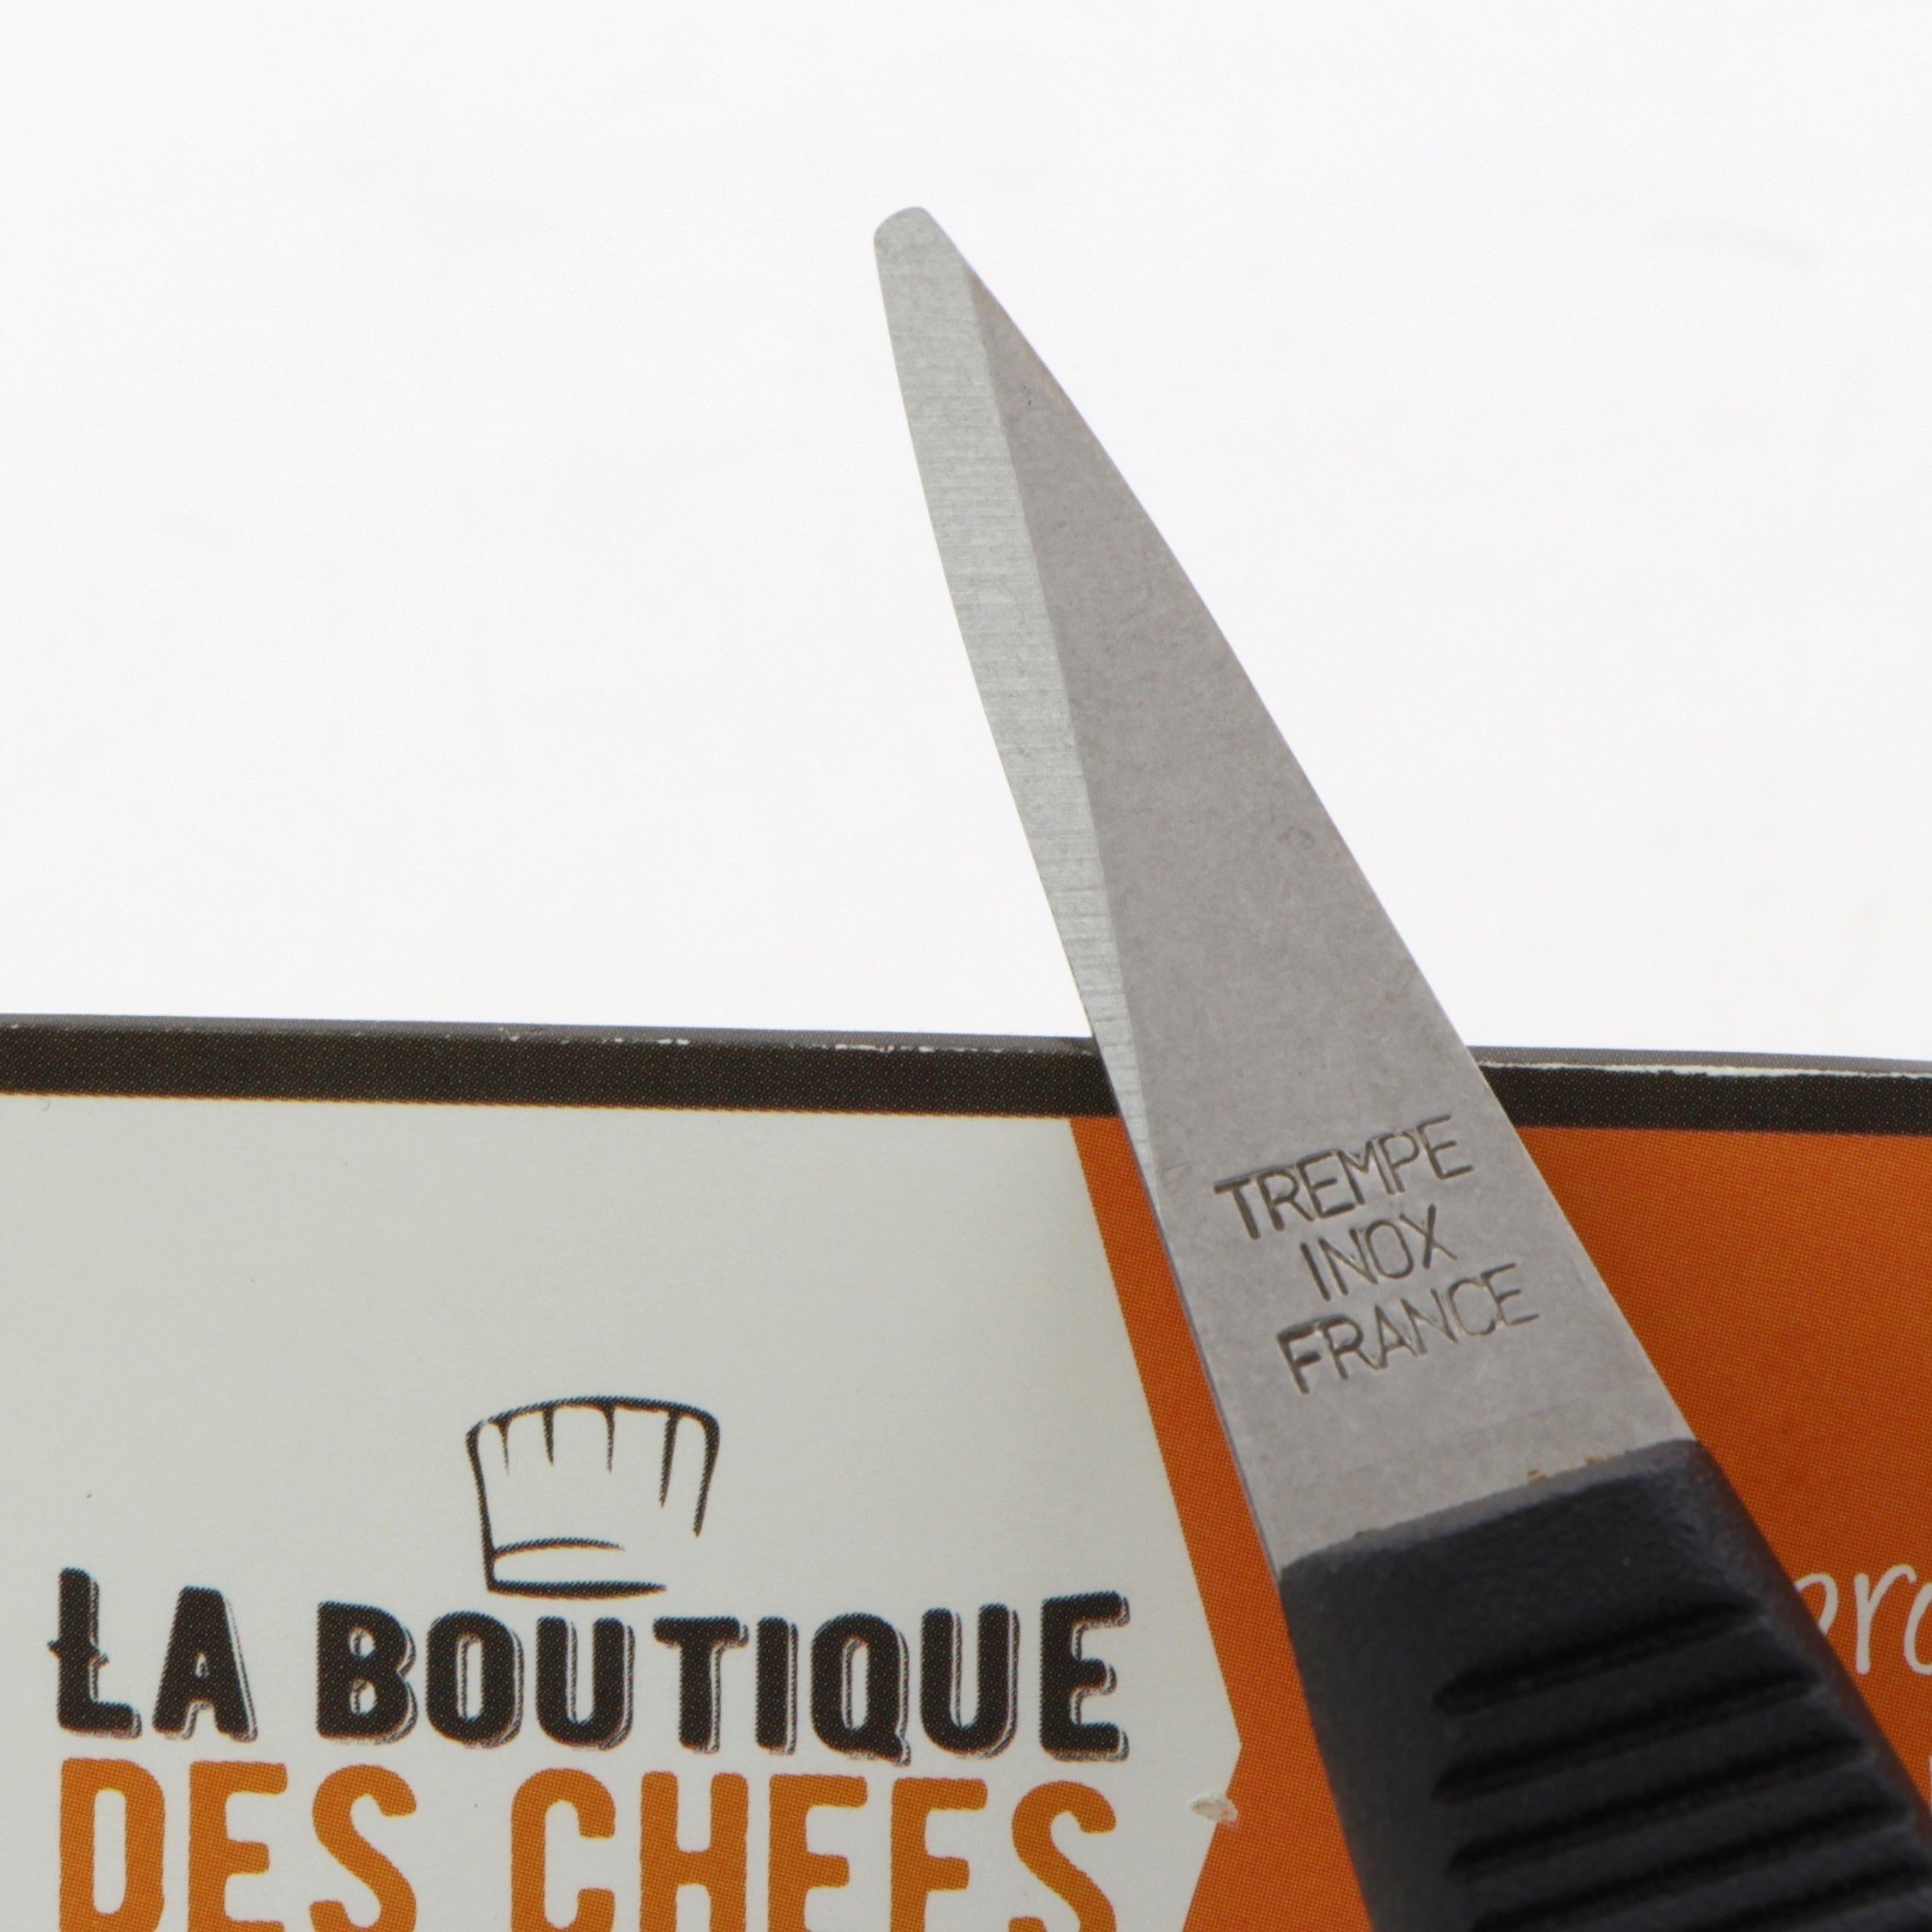 Couteau ou Lancette à huitres sans garde - Matfer-Bourgeat